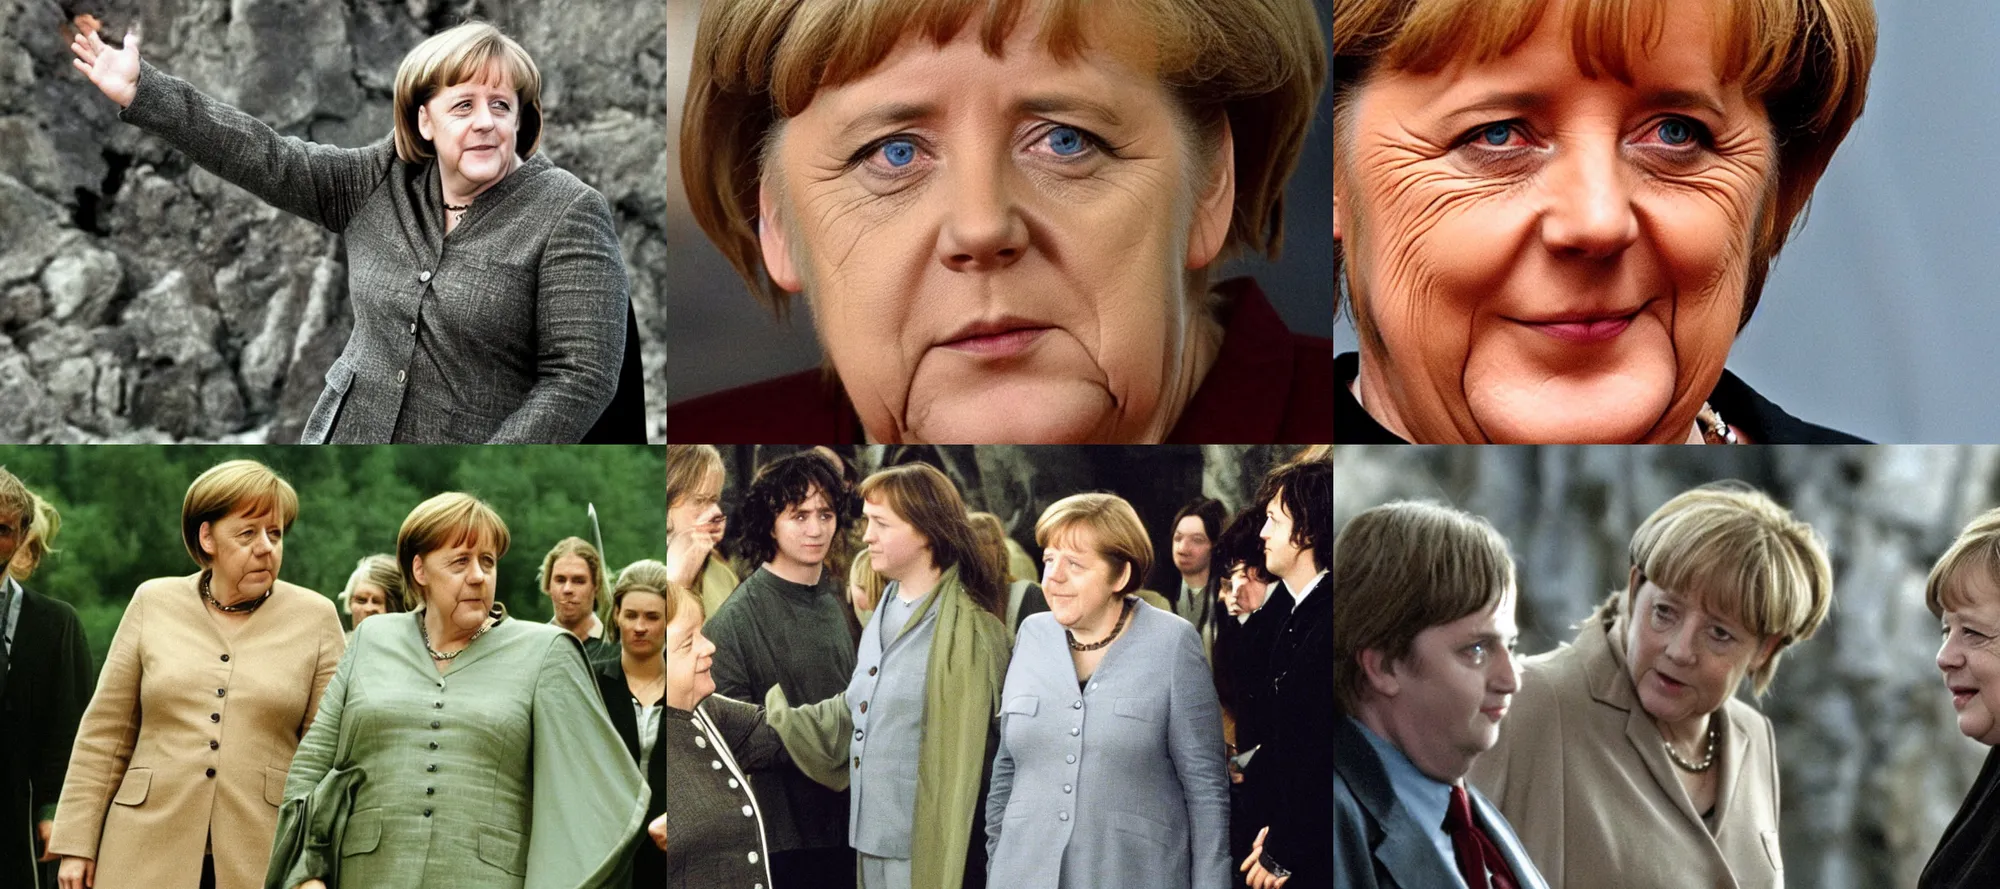 Prompt: Angela Merkel in Lord of the Rings 2001